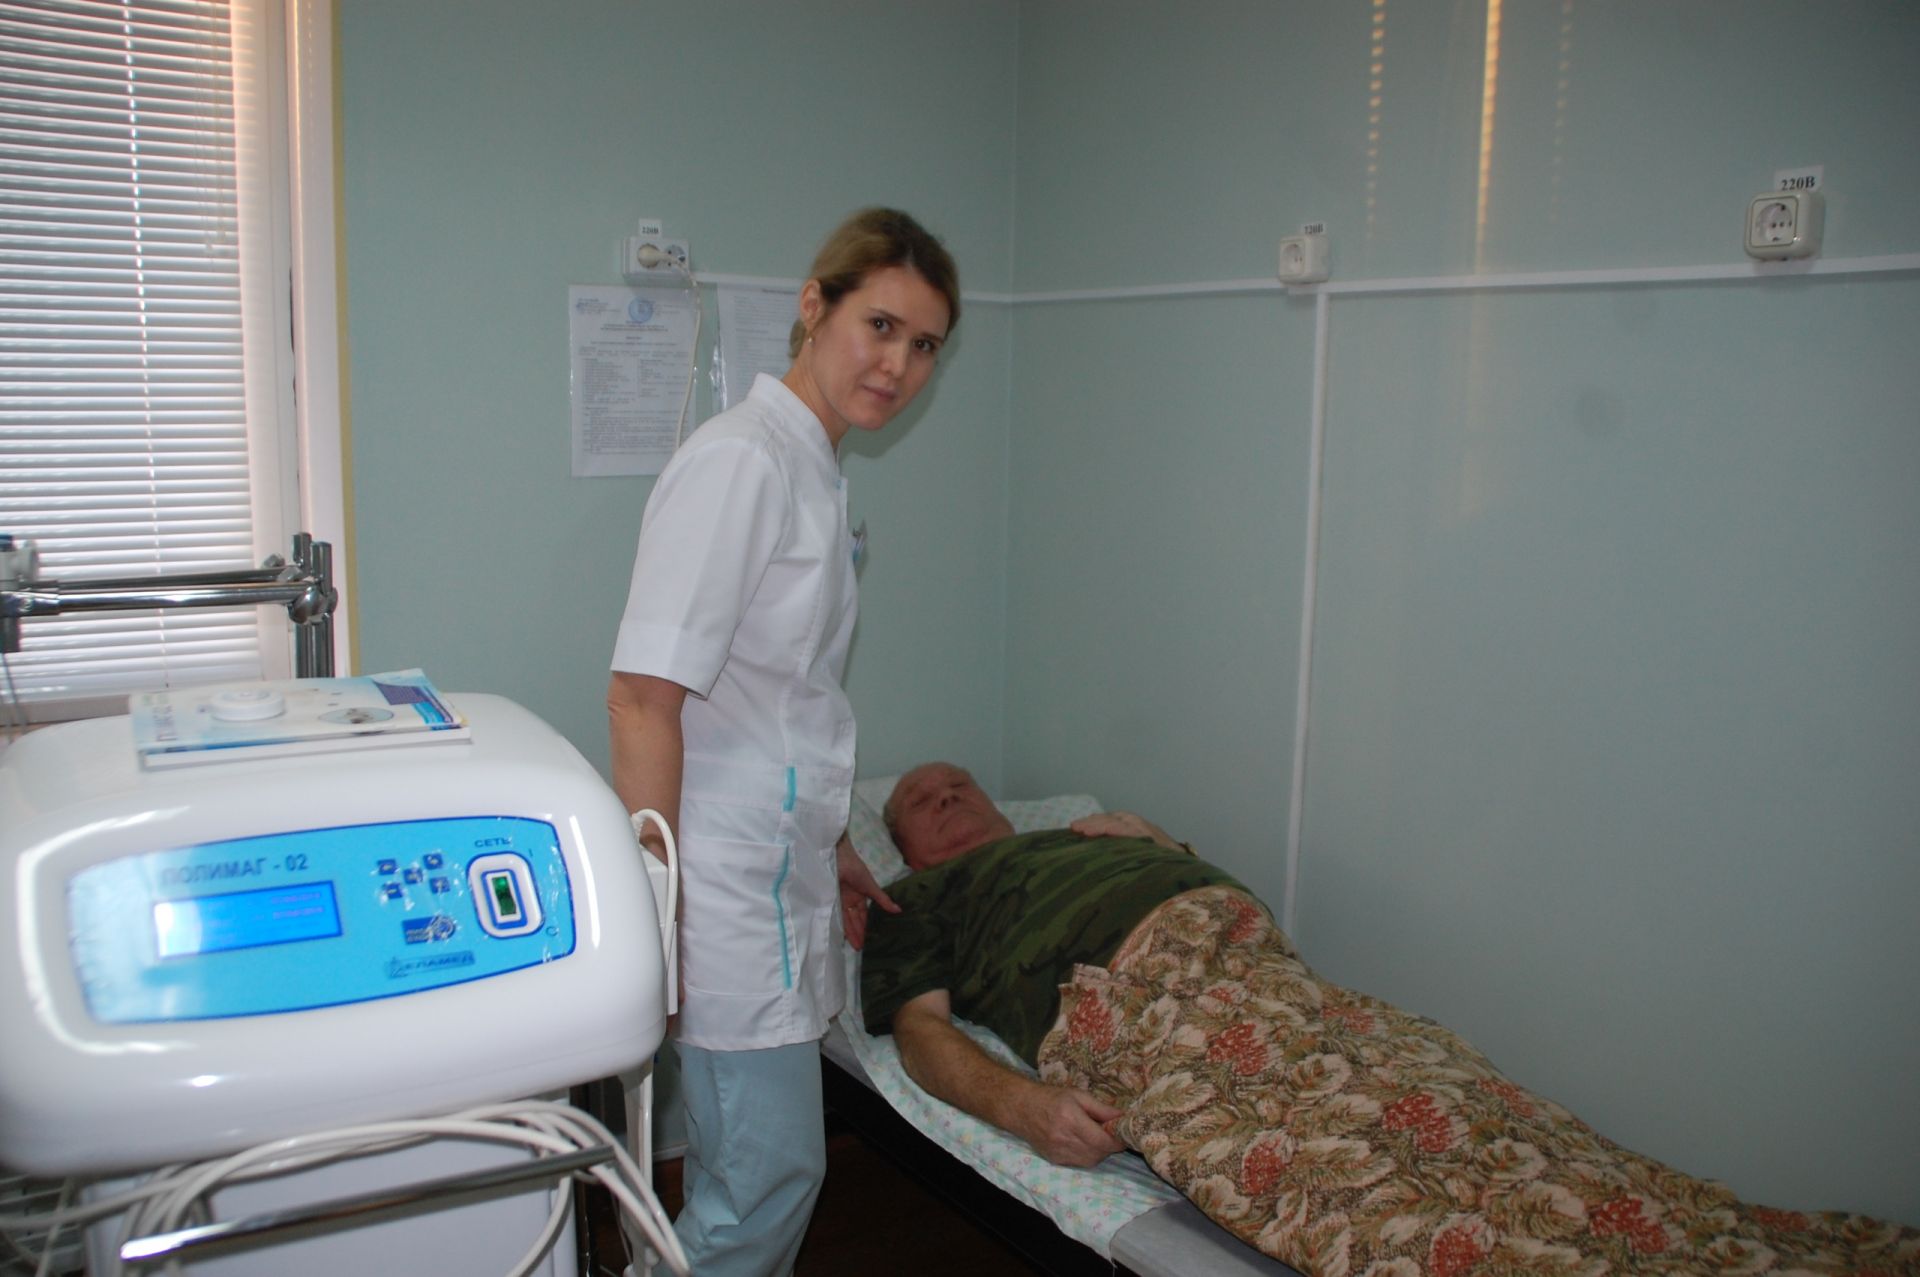 Заинский центр социальной помощи “Шатлык” получил сертификат